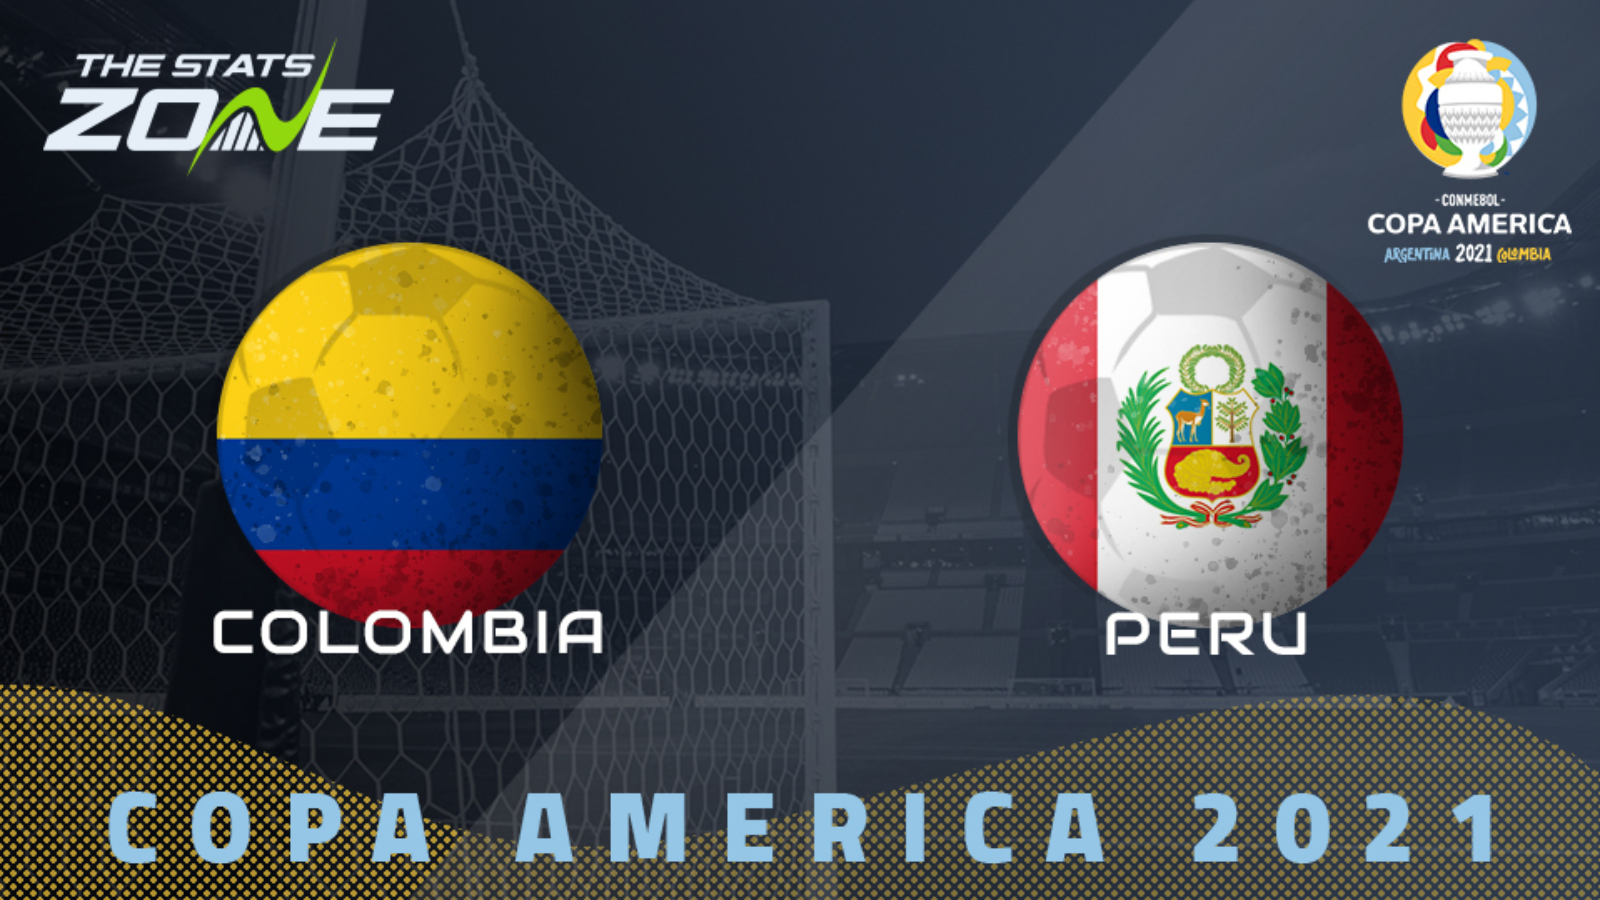 2021 Copa America Colombia Vs Peru Preview Prediction The Stats Zone